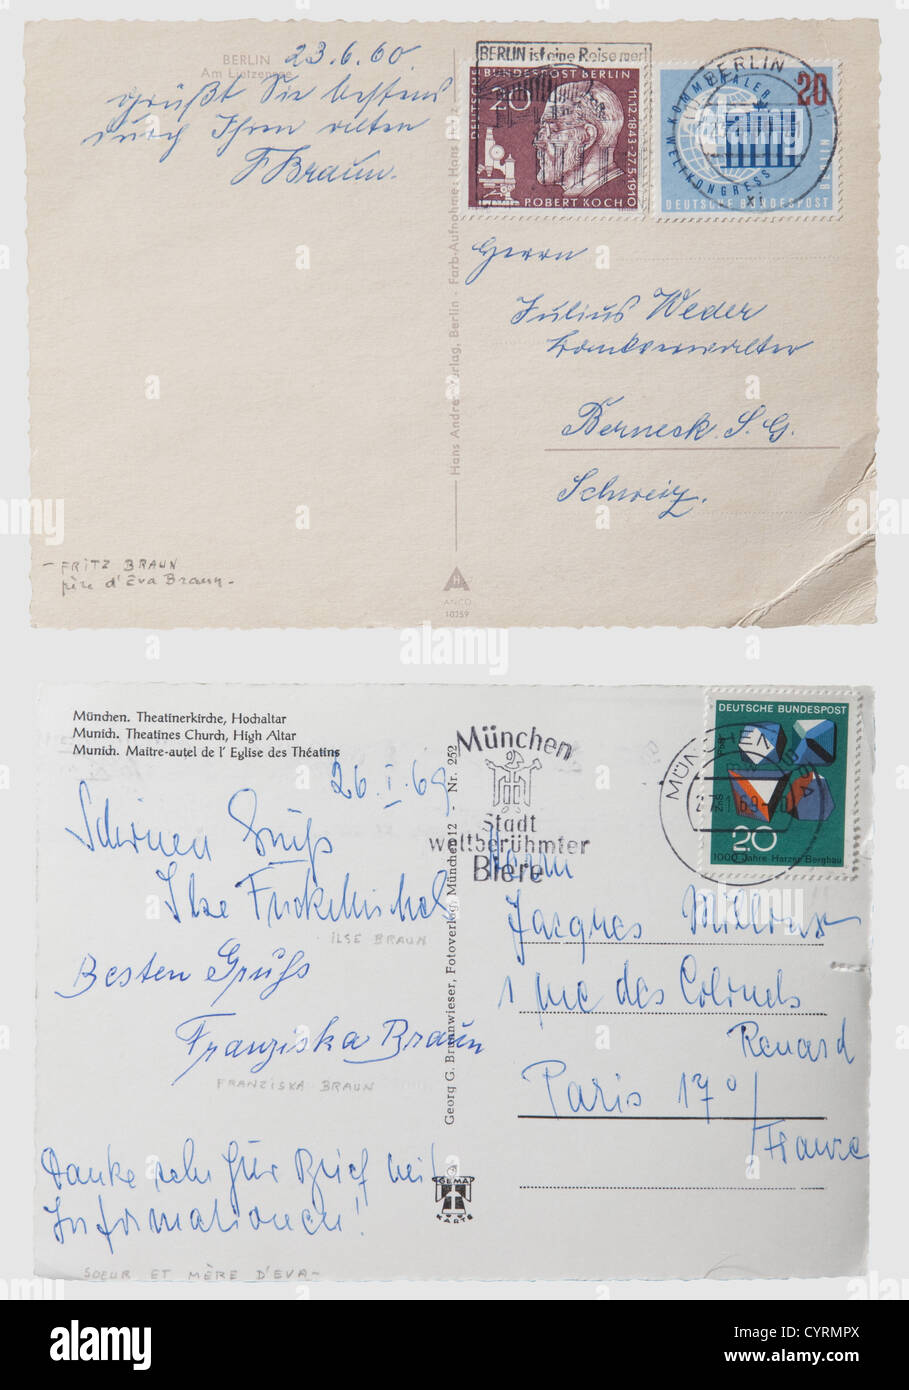 EVA Braun,une lettre manuscrite à sa tante et son oncle 1943 Letterhead avec le monogramme 'E.B.' rehaussé, écrit à l'encre et daté 'Berghof,den 14.I.43'.Eva Braun s'excuse pour avoir manqué leur anniversaire de mariage en argent et envoie un panier de fleurs ainsi que du café et des cigarettes.plié.inclus sont deux cartes postales avec photo, l'une avec les salutations de son père Fritz Braun de 1960, l'autre de sa mère Franziska et soeur Ilse 1969.également trois reproductions de photos d'Eva Braun, d'Eva et Hitler à la Berghof,et de sa famille.Eva Braun se trouva seule à la be,droits additionnels-Clearences-non disponible Banque D'Images